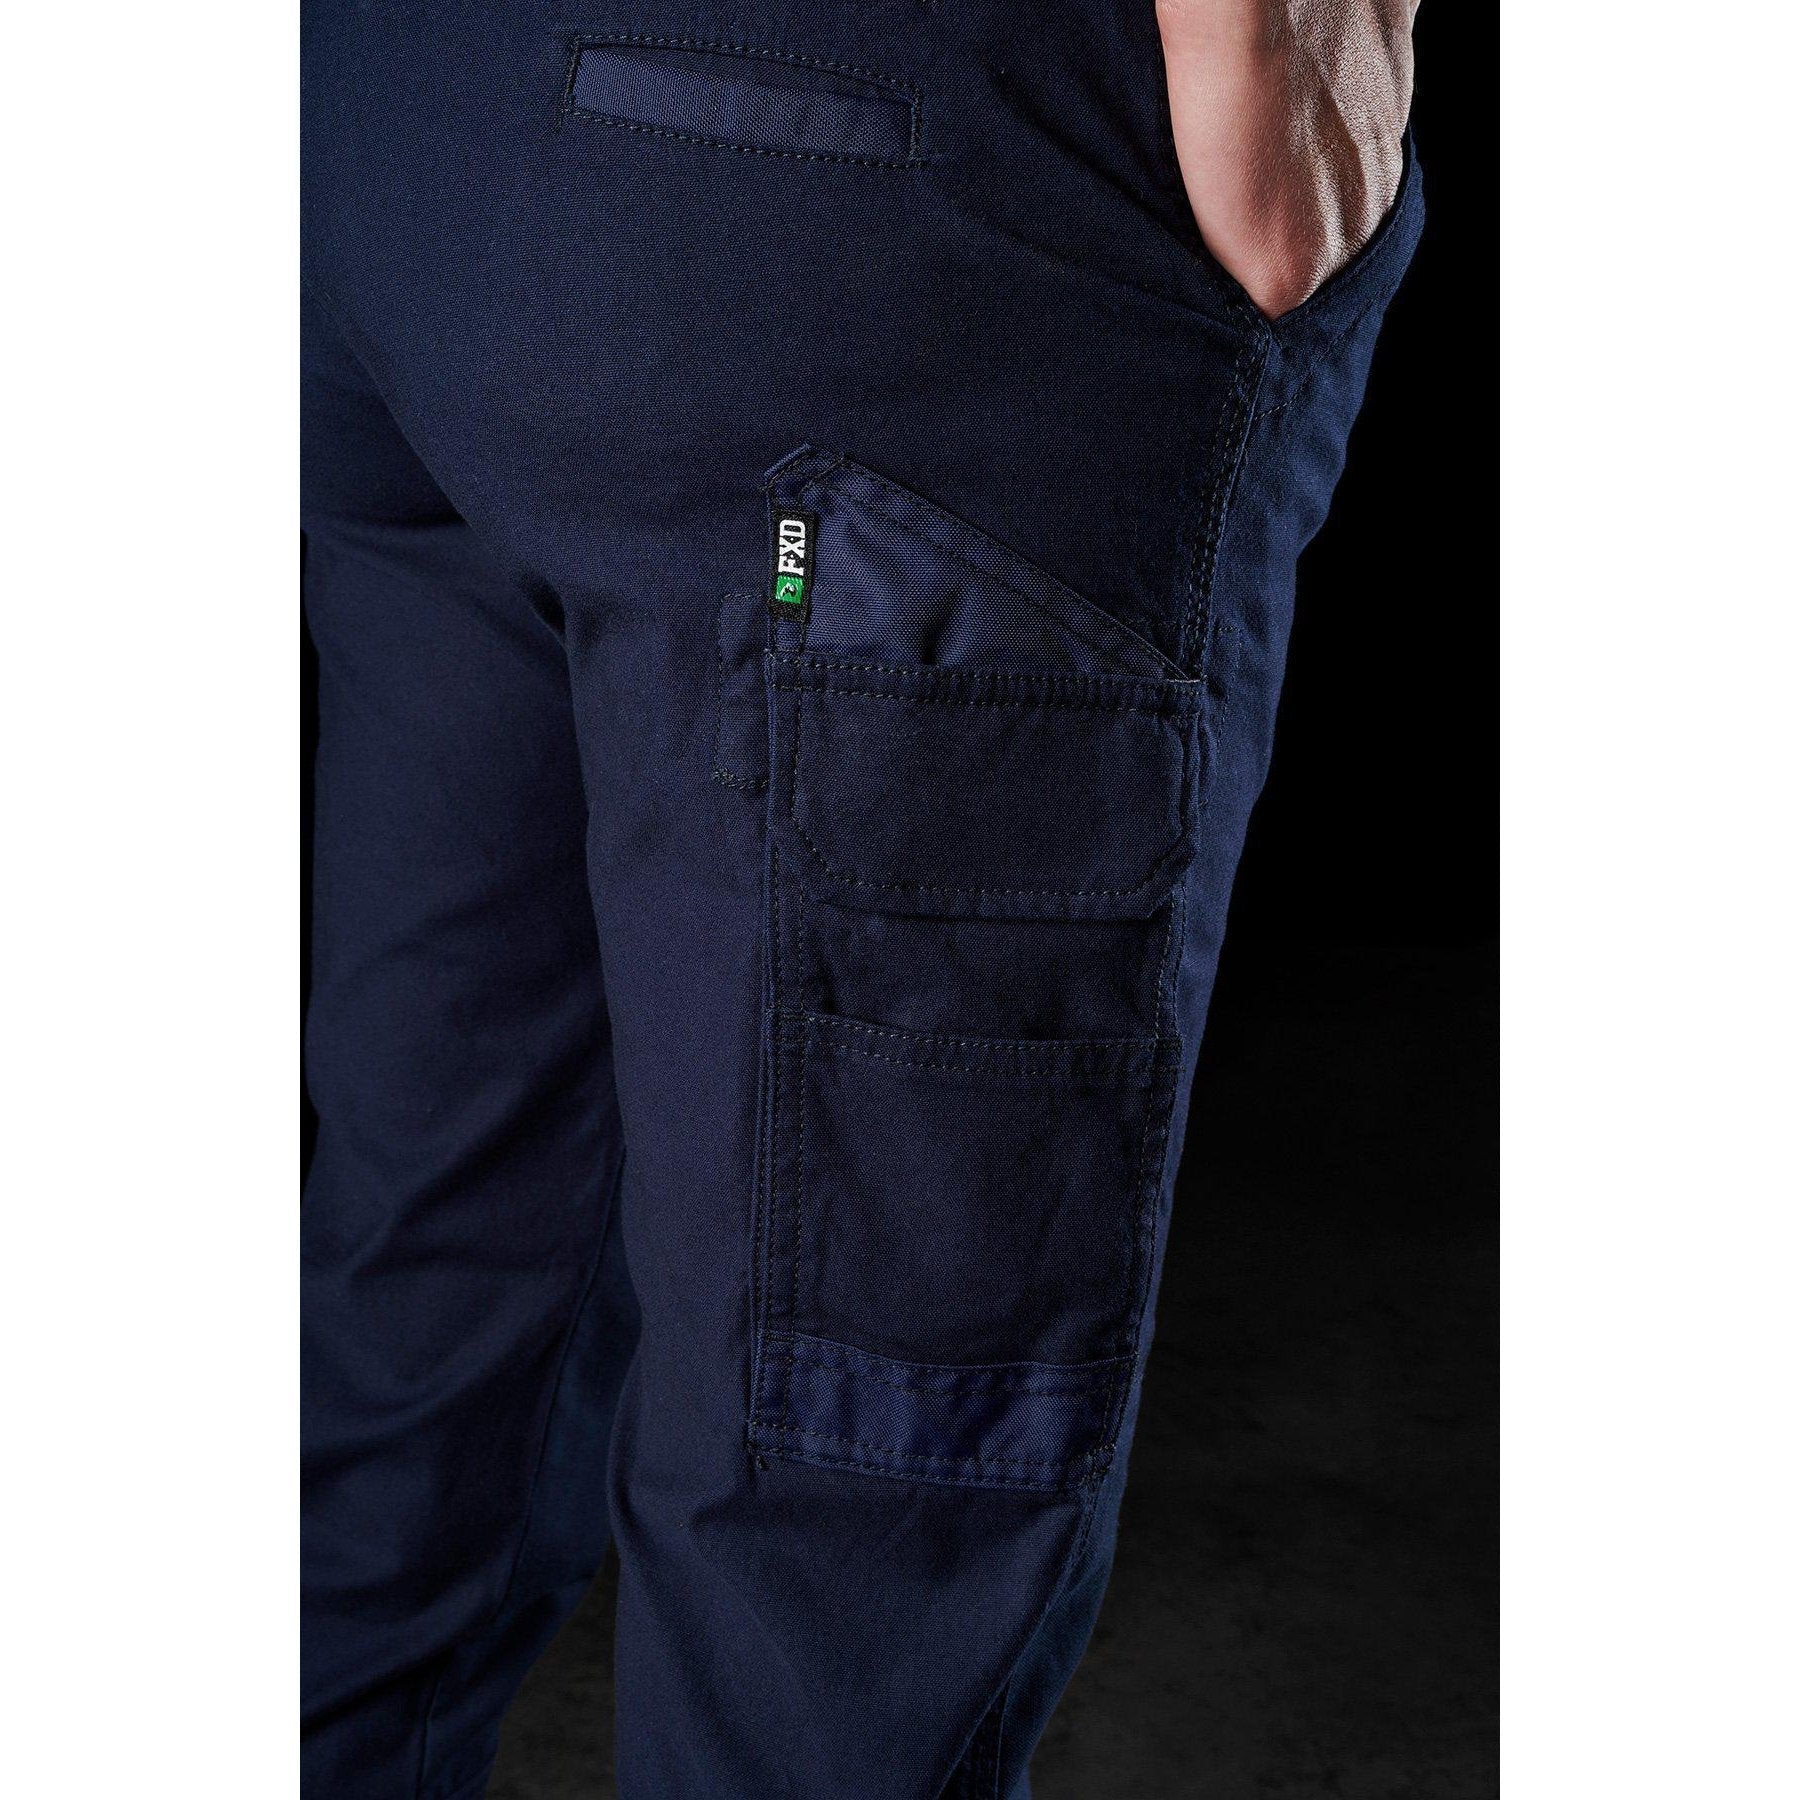 FXD WP-4W Women's Stretch Cuffed Work Pant (FX11906201) - Black - LOD  Workwear